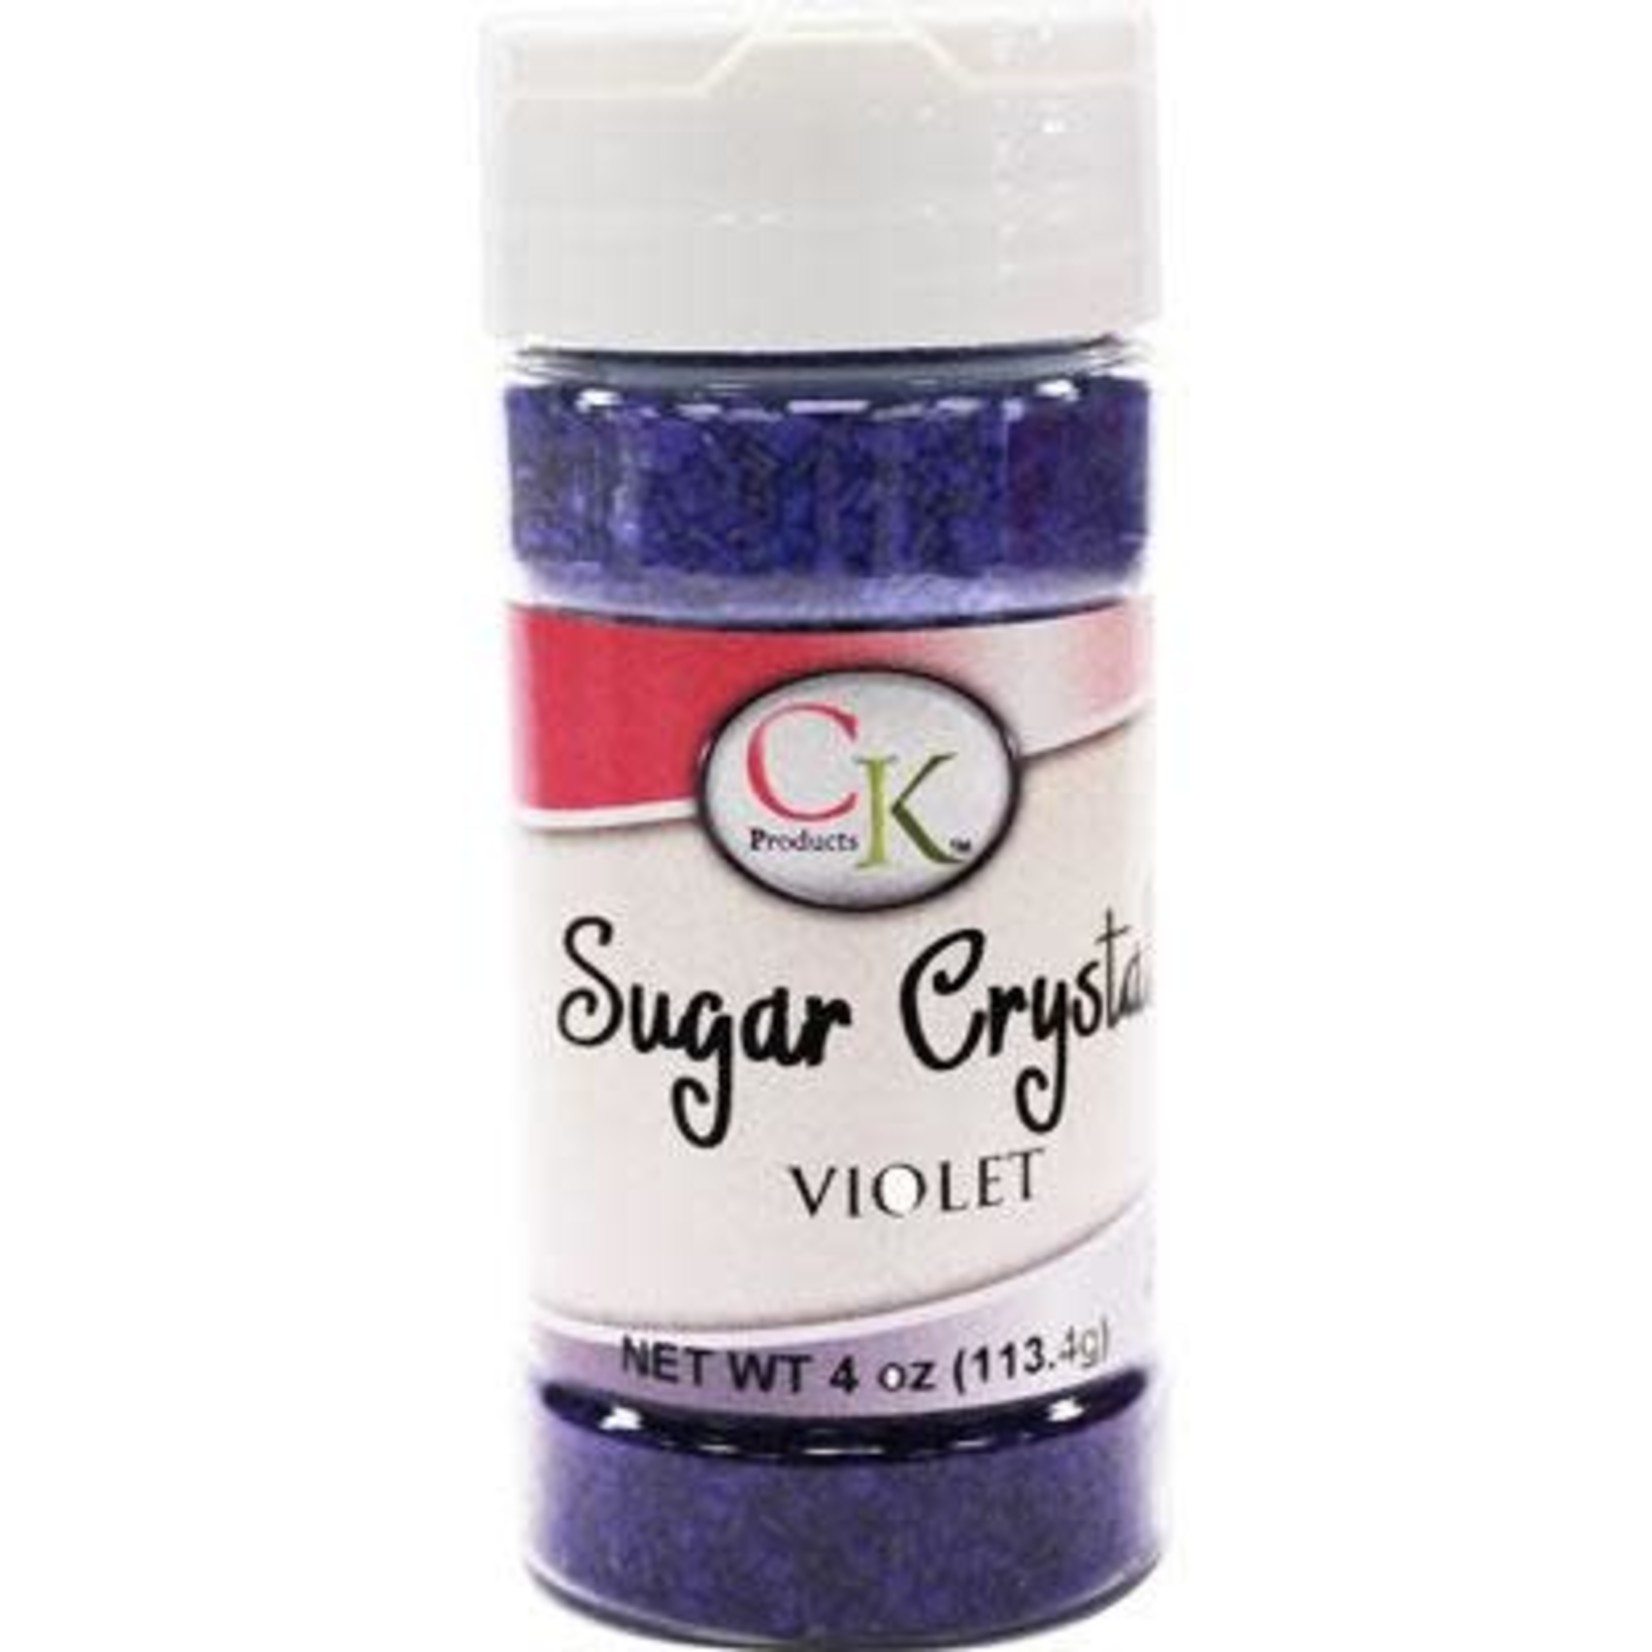 CK Violet Sugar Crystals